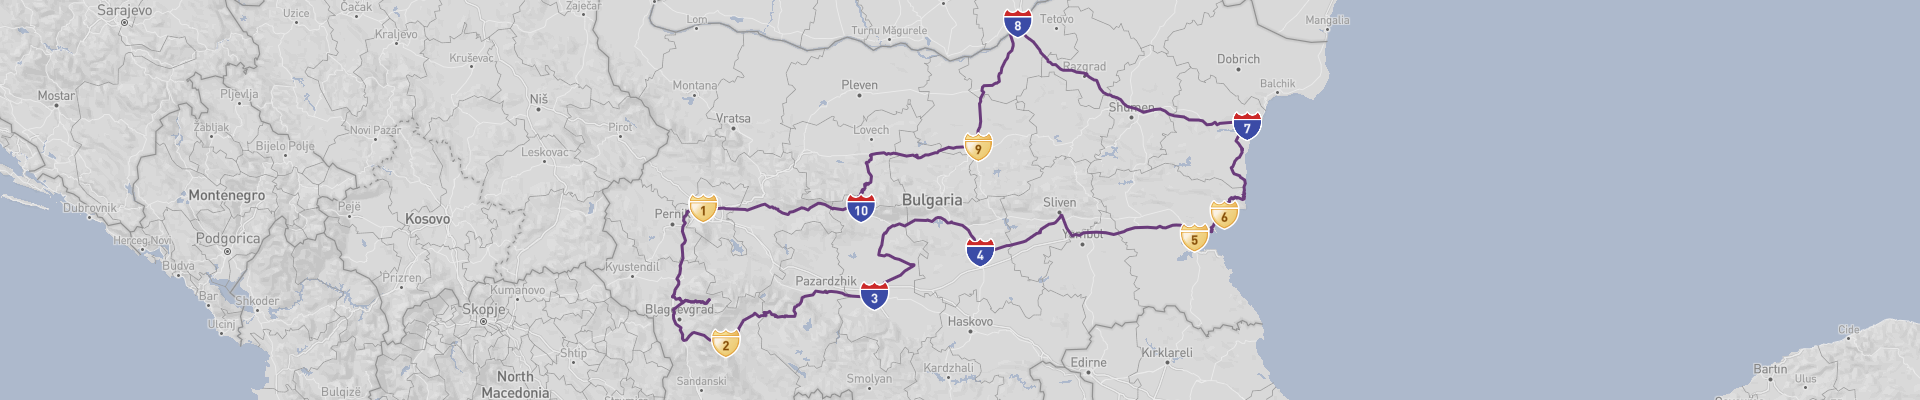 Bulgaria Road Trip